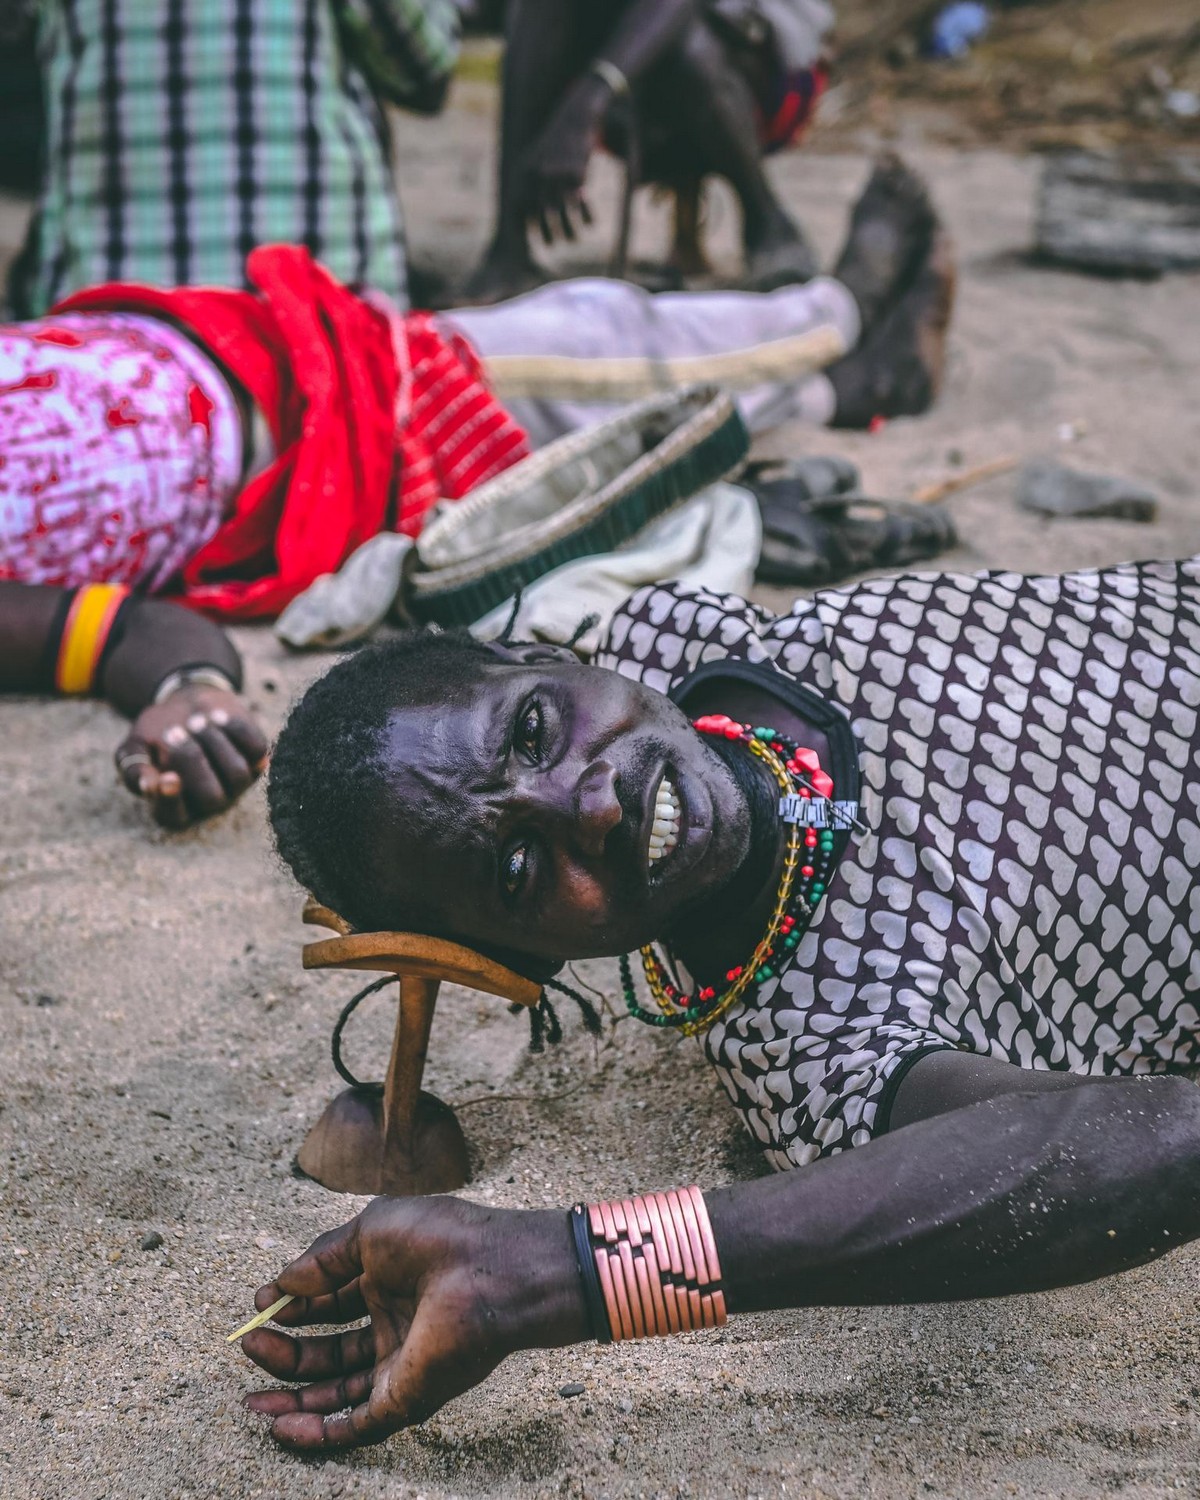 Удивительные фотографии племени хамар